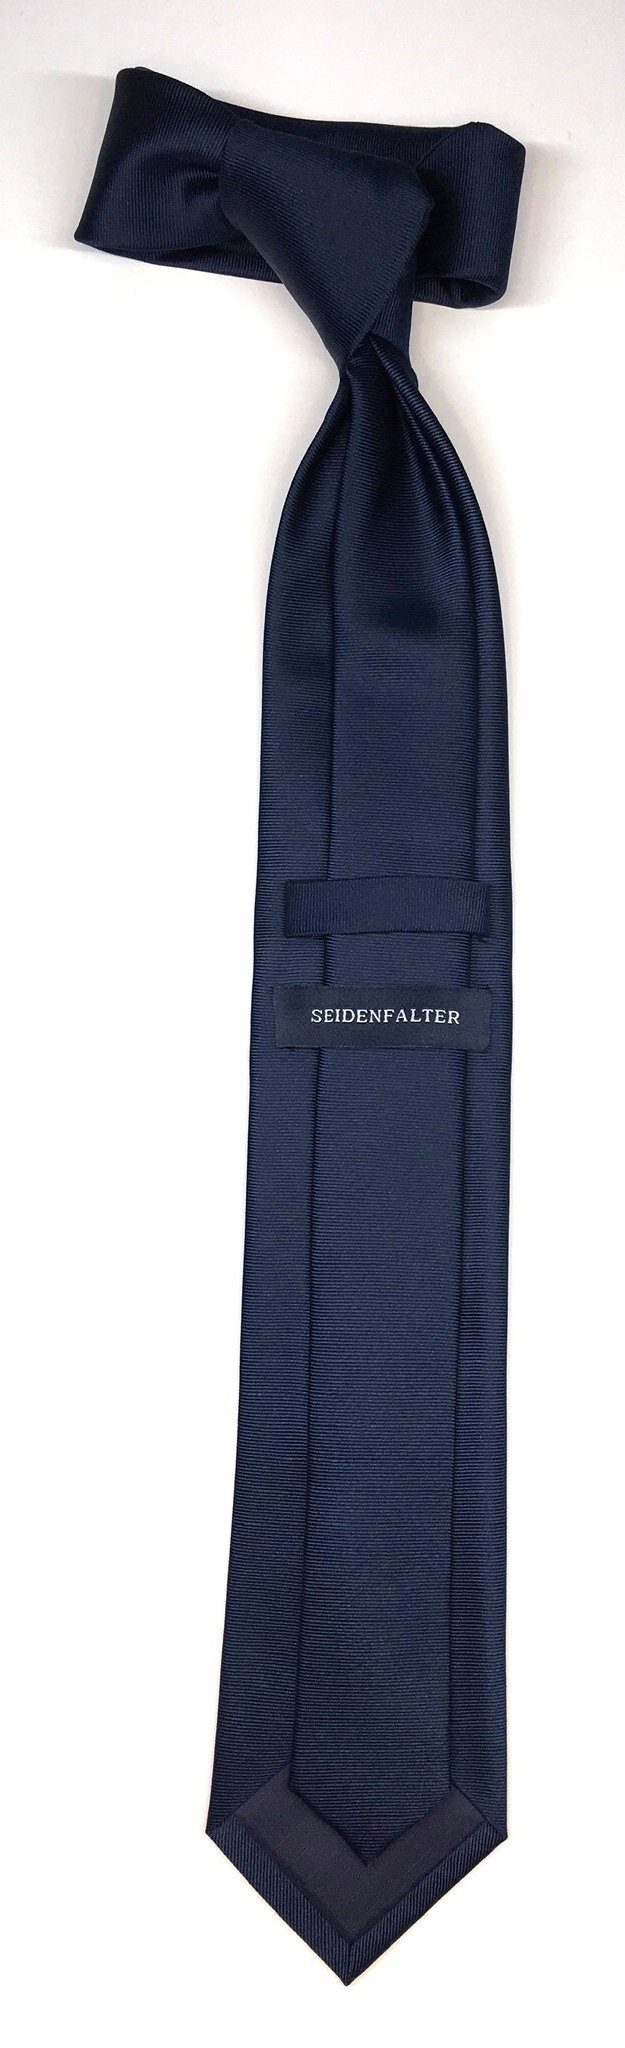 Seidenfalter Krawatte Seidenfalter Uni Krawatte im Design Uni Krawatte edlen Marine 7cm Seidenfalter